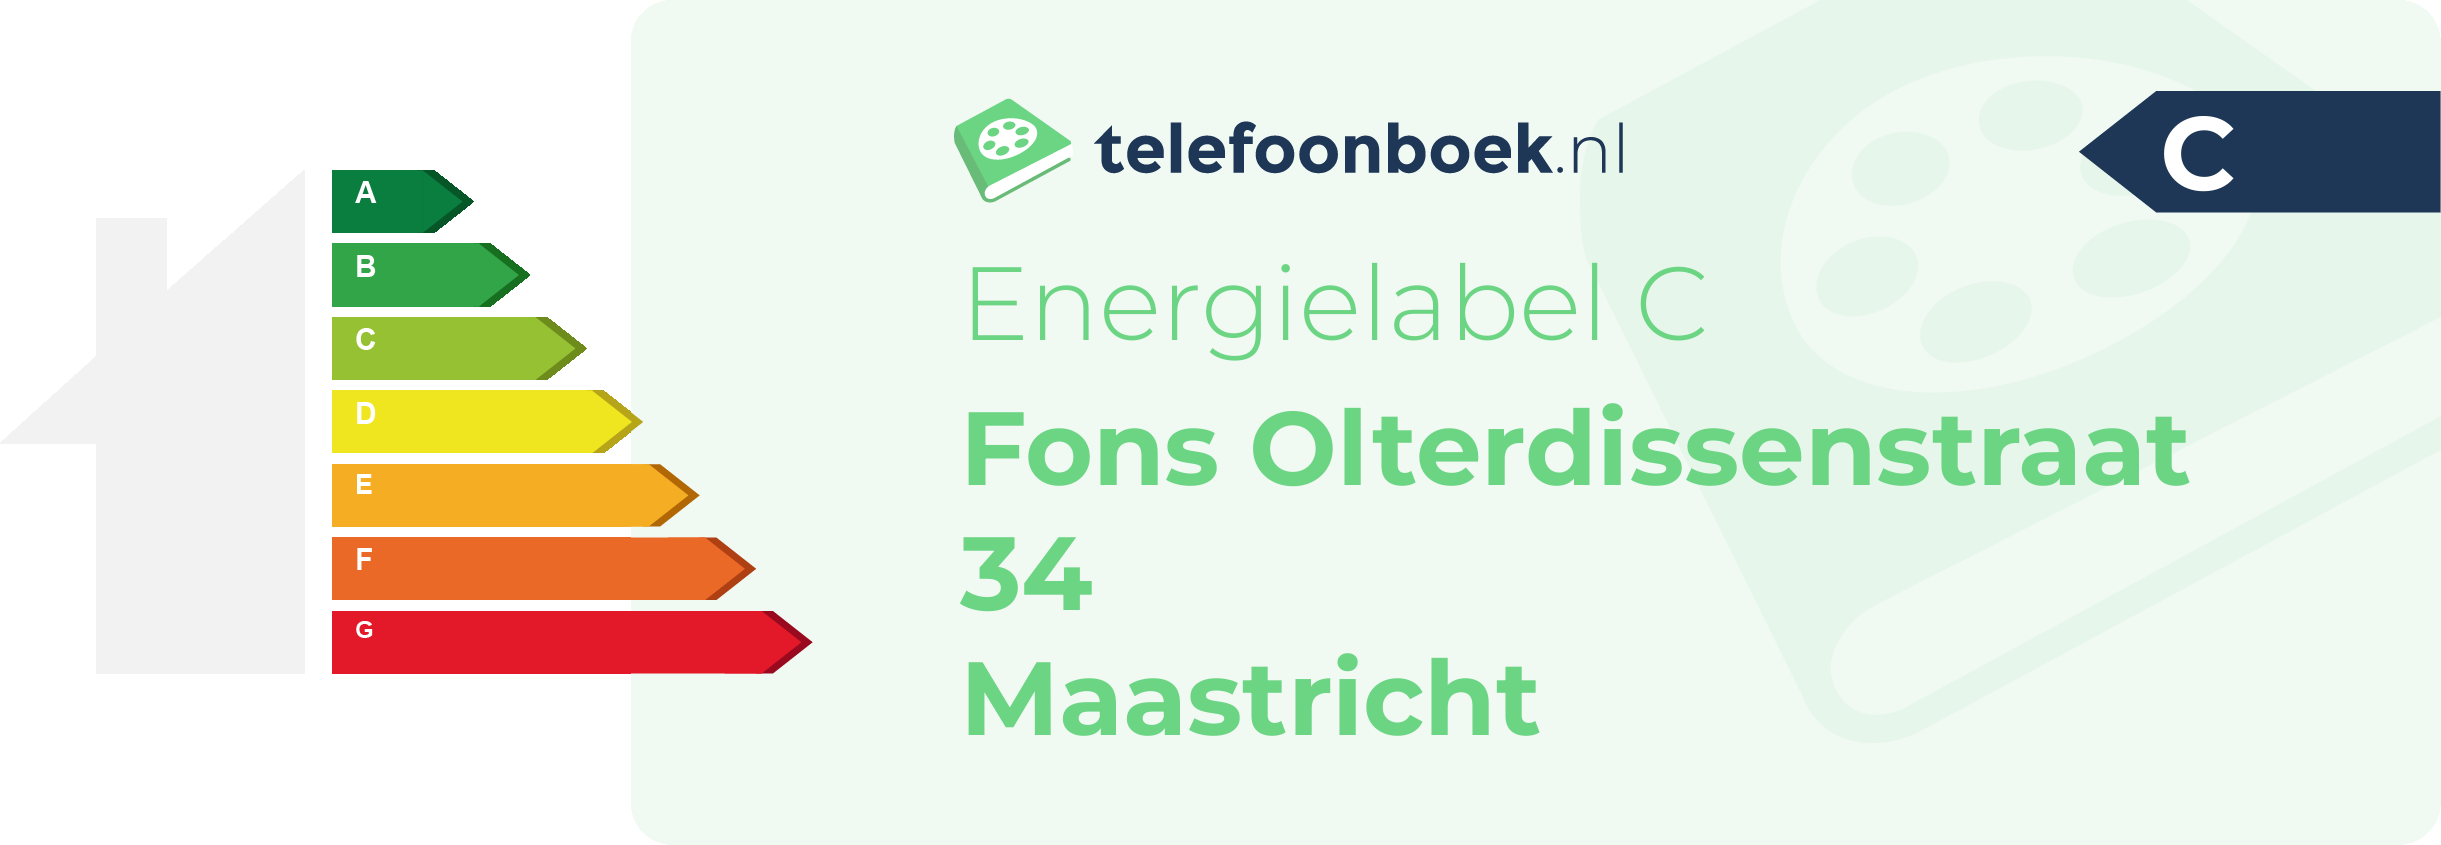 Energielabel Fons Olterdissenstraat 34 Maastricht